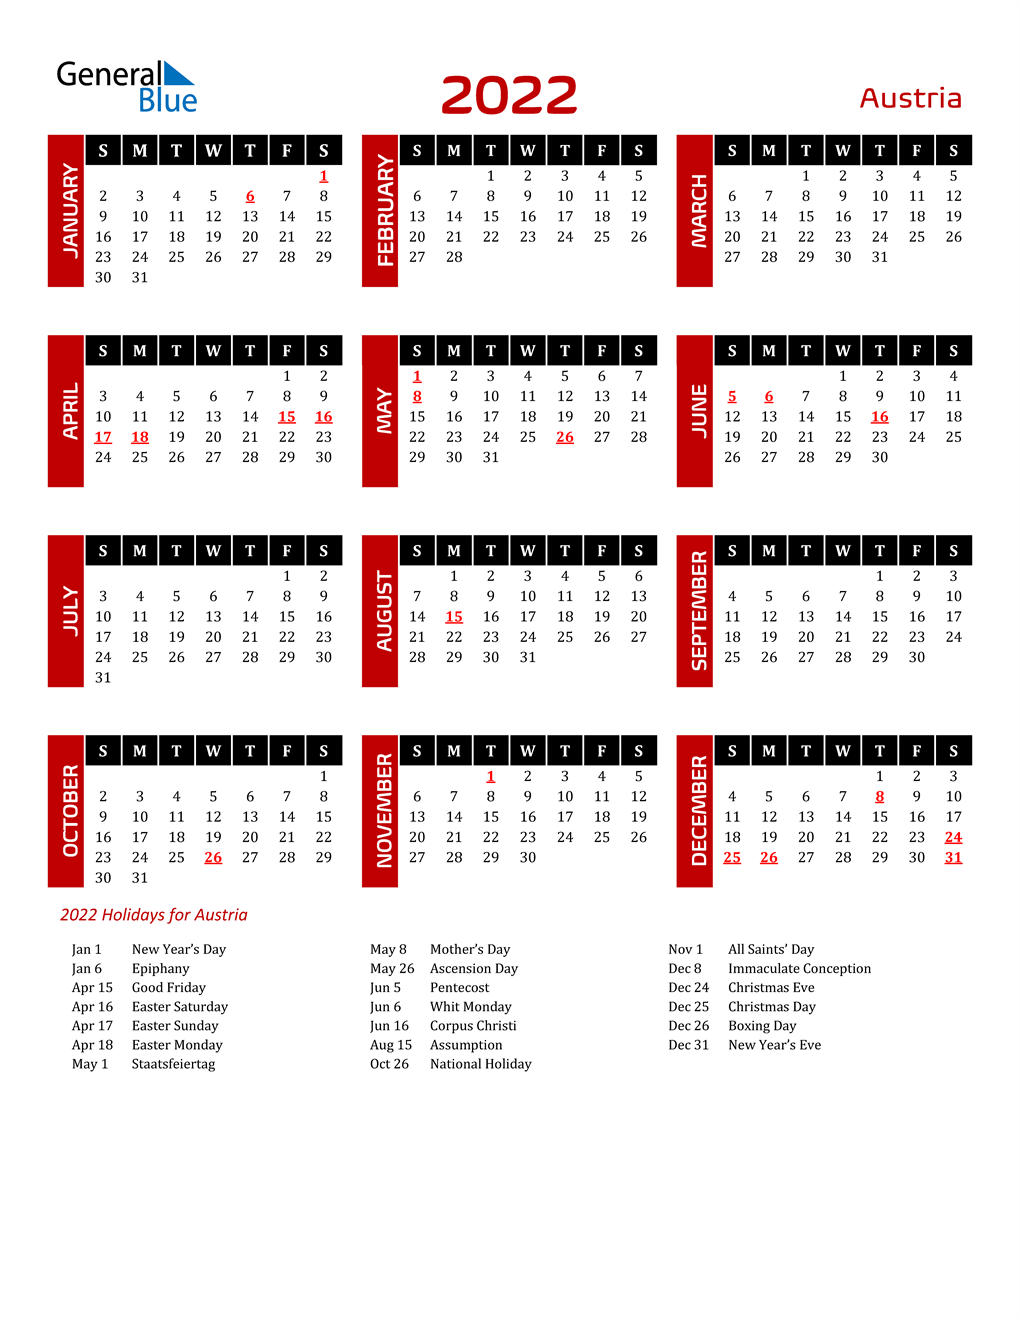 2022 Austria Calendar With Holidays